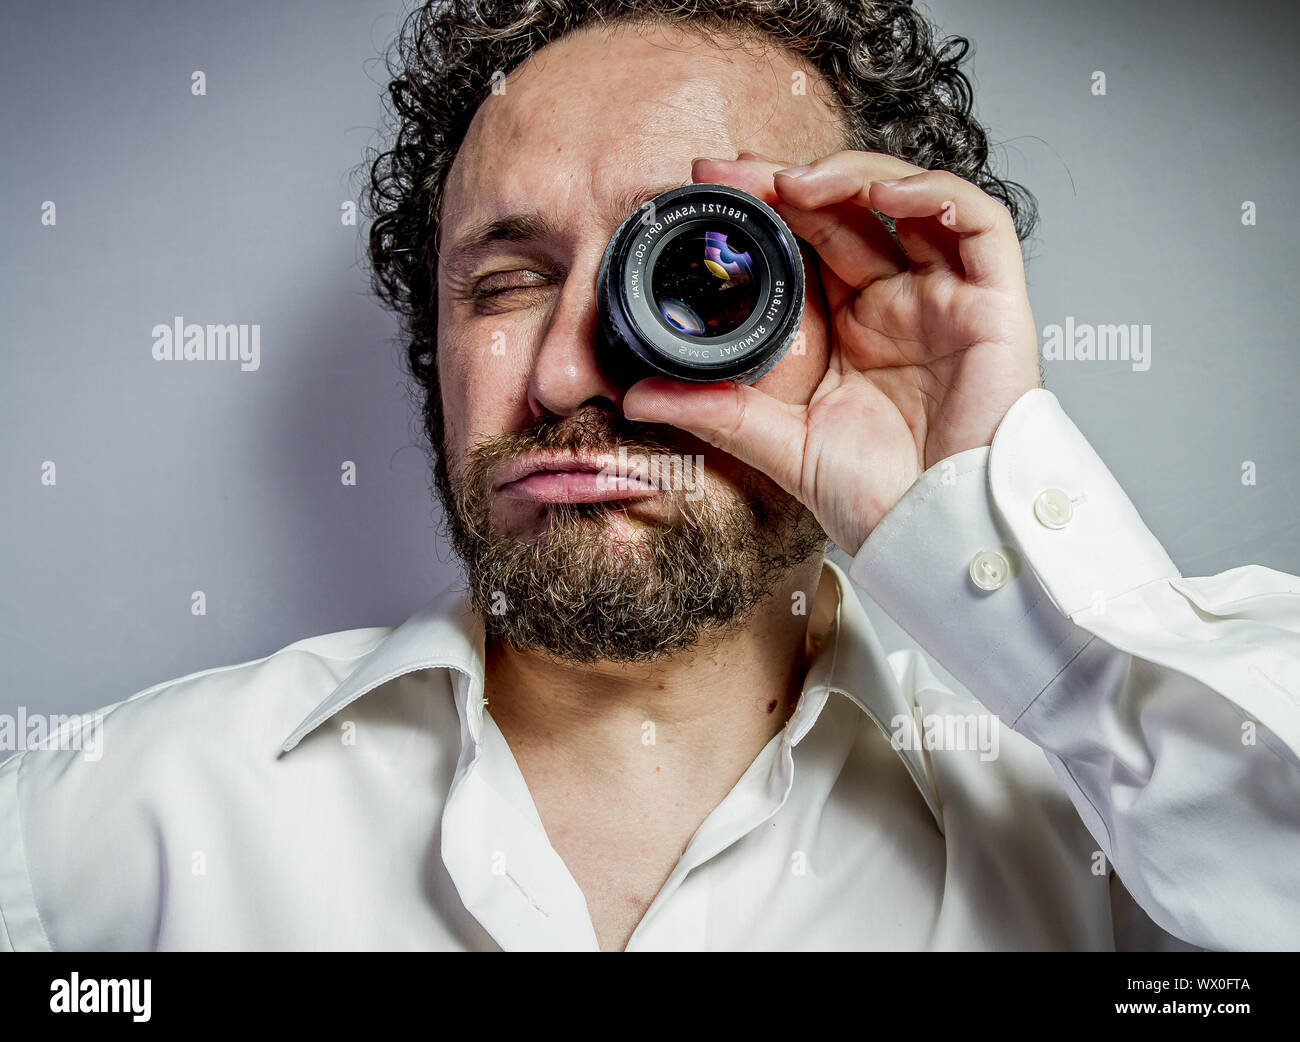 Fotograf mit Objektiv, Mann mit intensiven Ausdruck, weißes Hemd Stockfoto